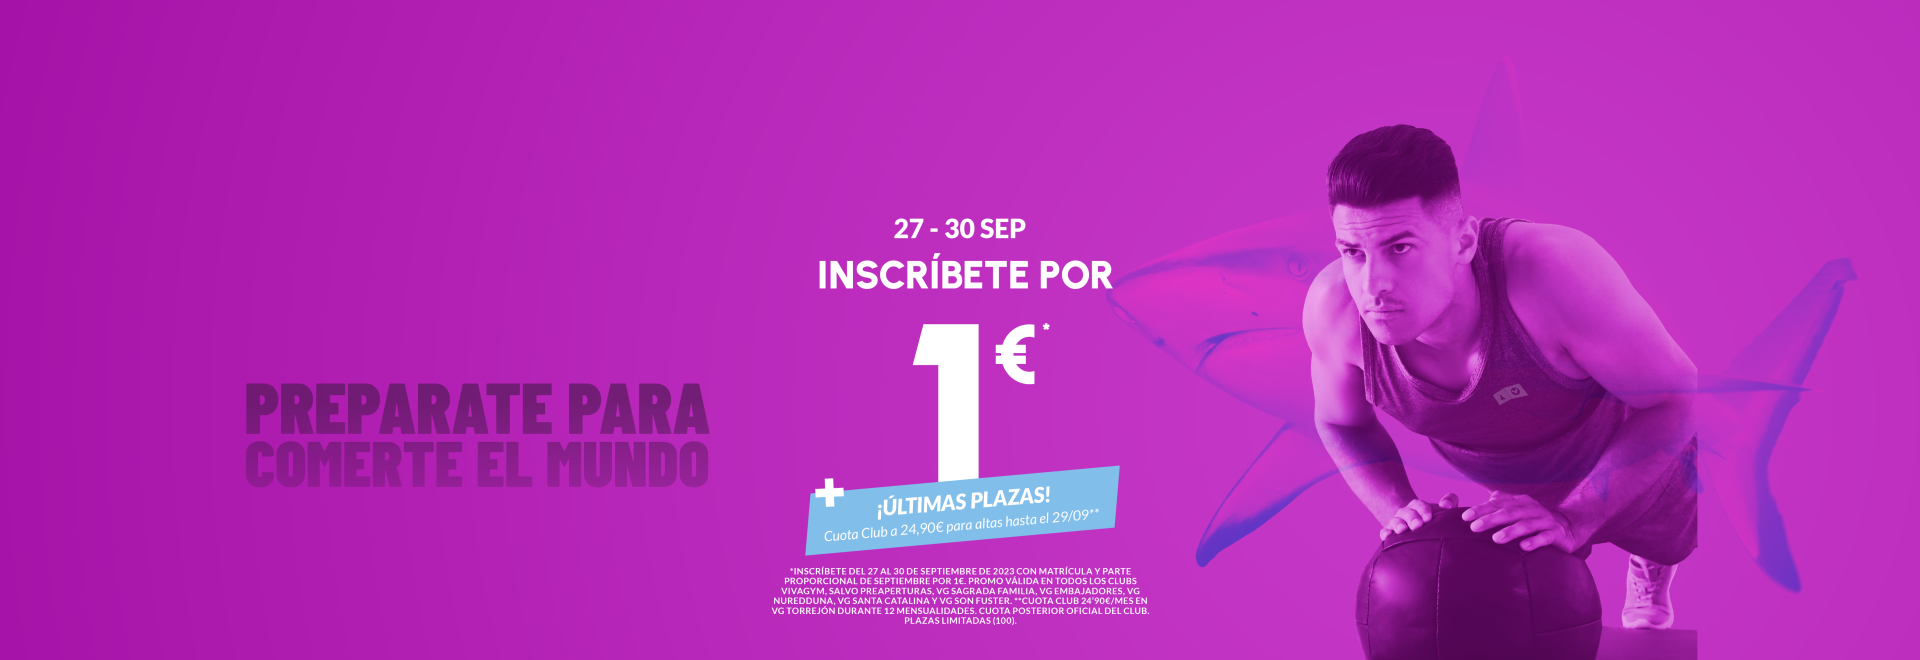 Torrejón 1€